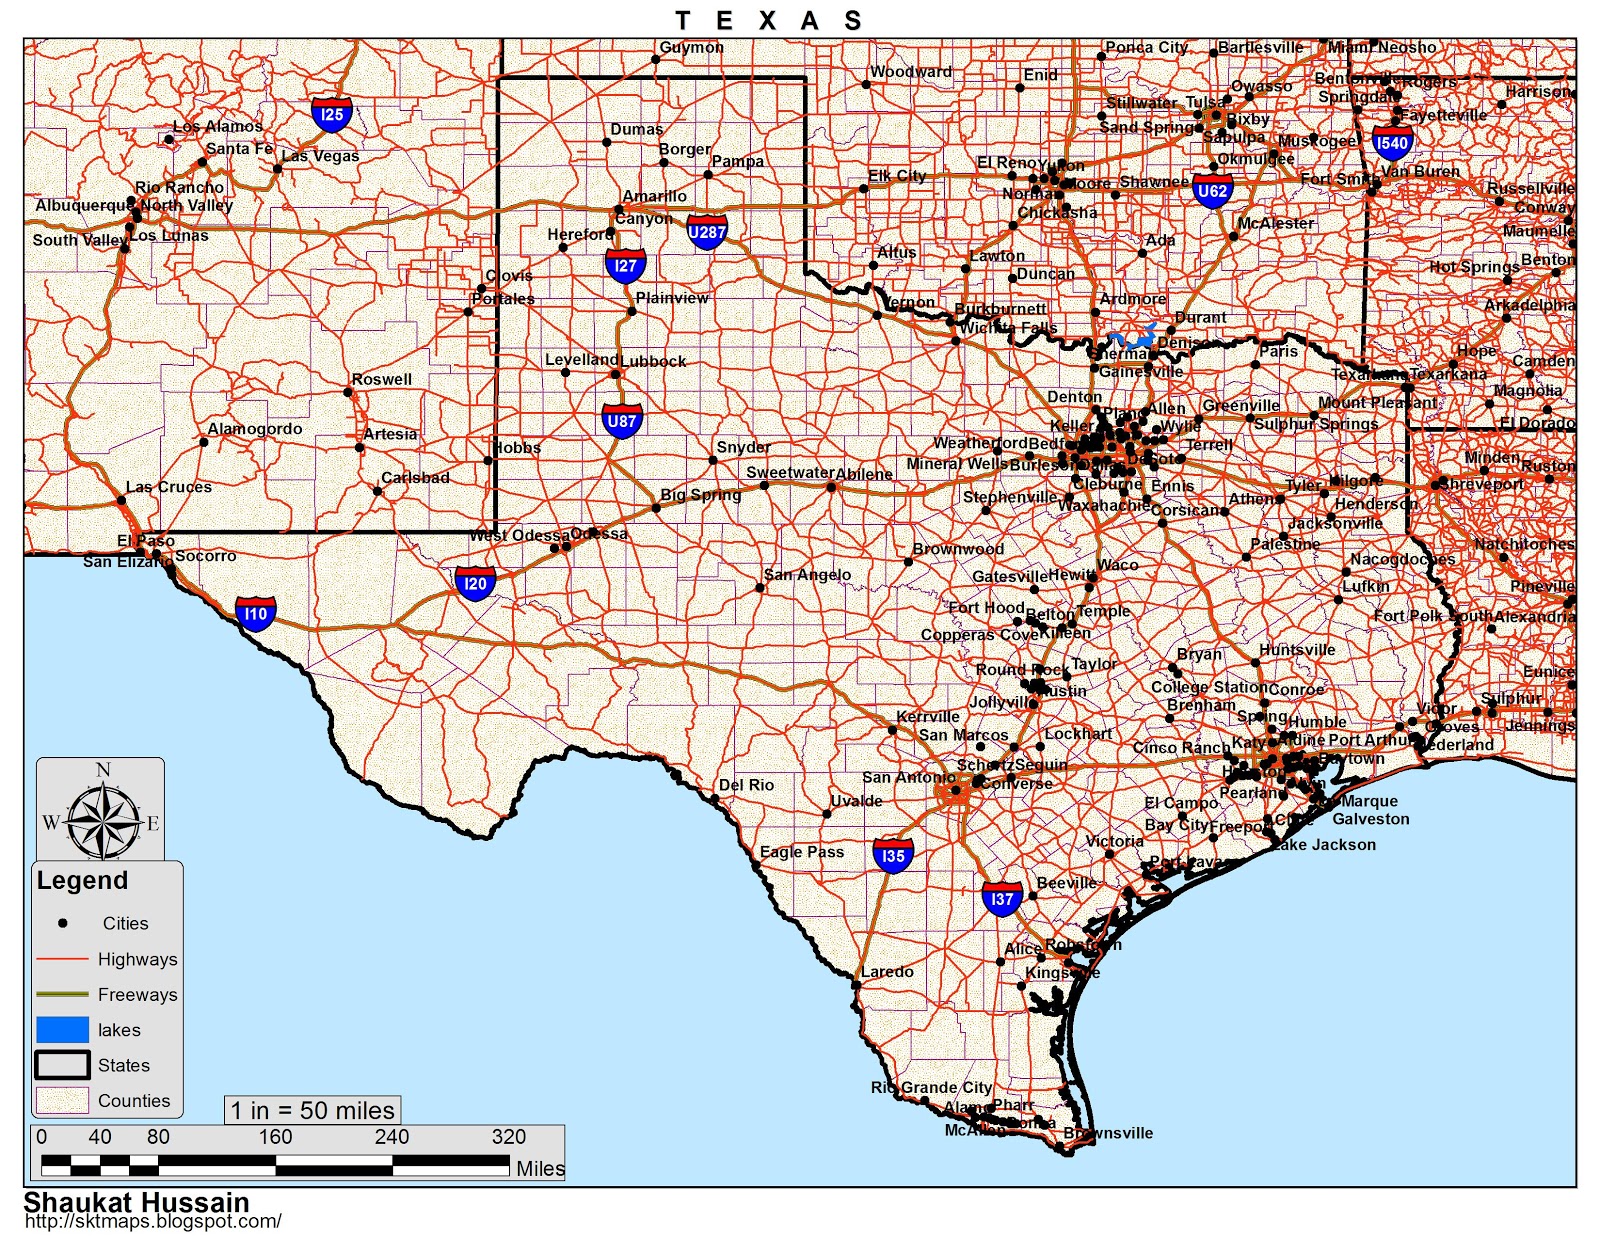 Mapa De Texas Con Nombres